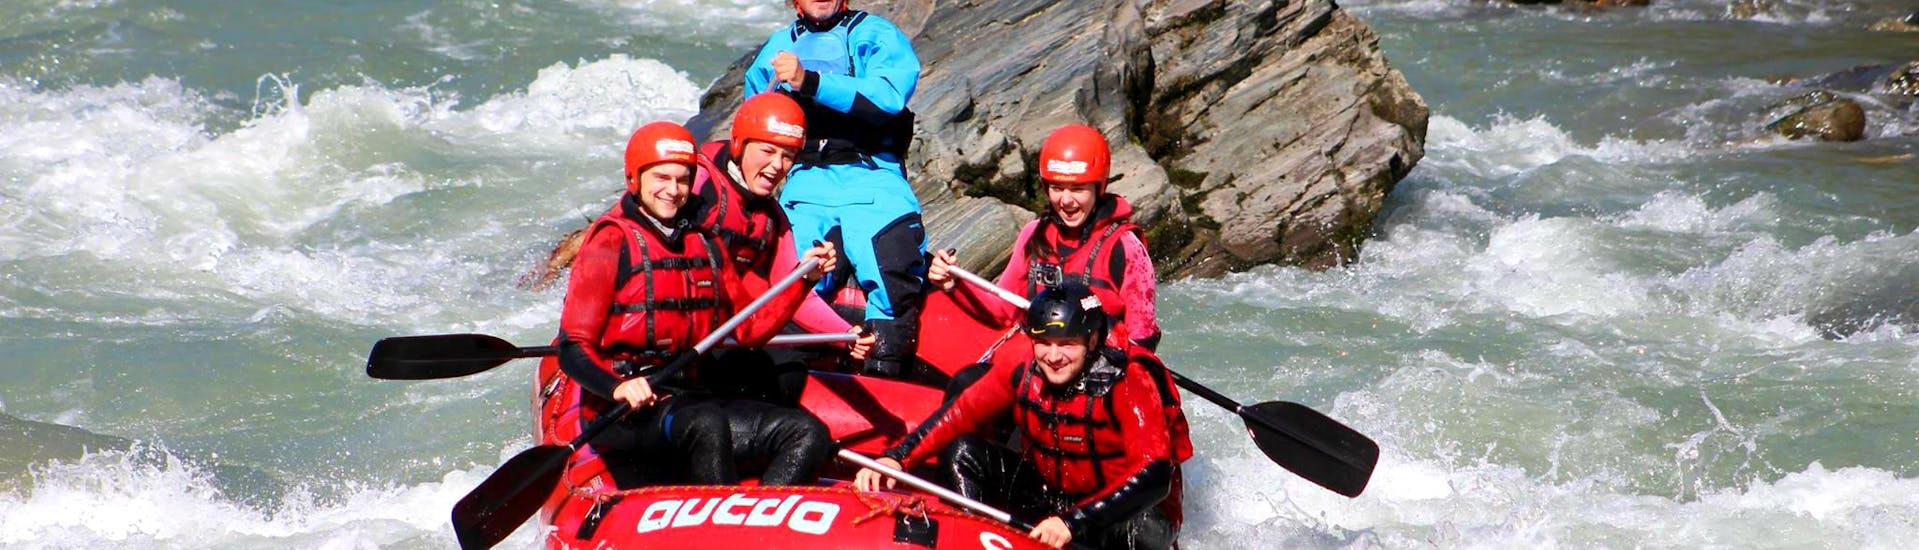 Een raftinggroep die samen met een ervaren gids van Outdo Zell am See Rating & Canyoning de golven en stroomversnellingen van de rivier de Salzach bedwingt tijdens hun Rafting Tour "Wild Water".